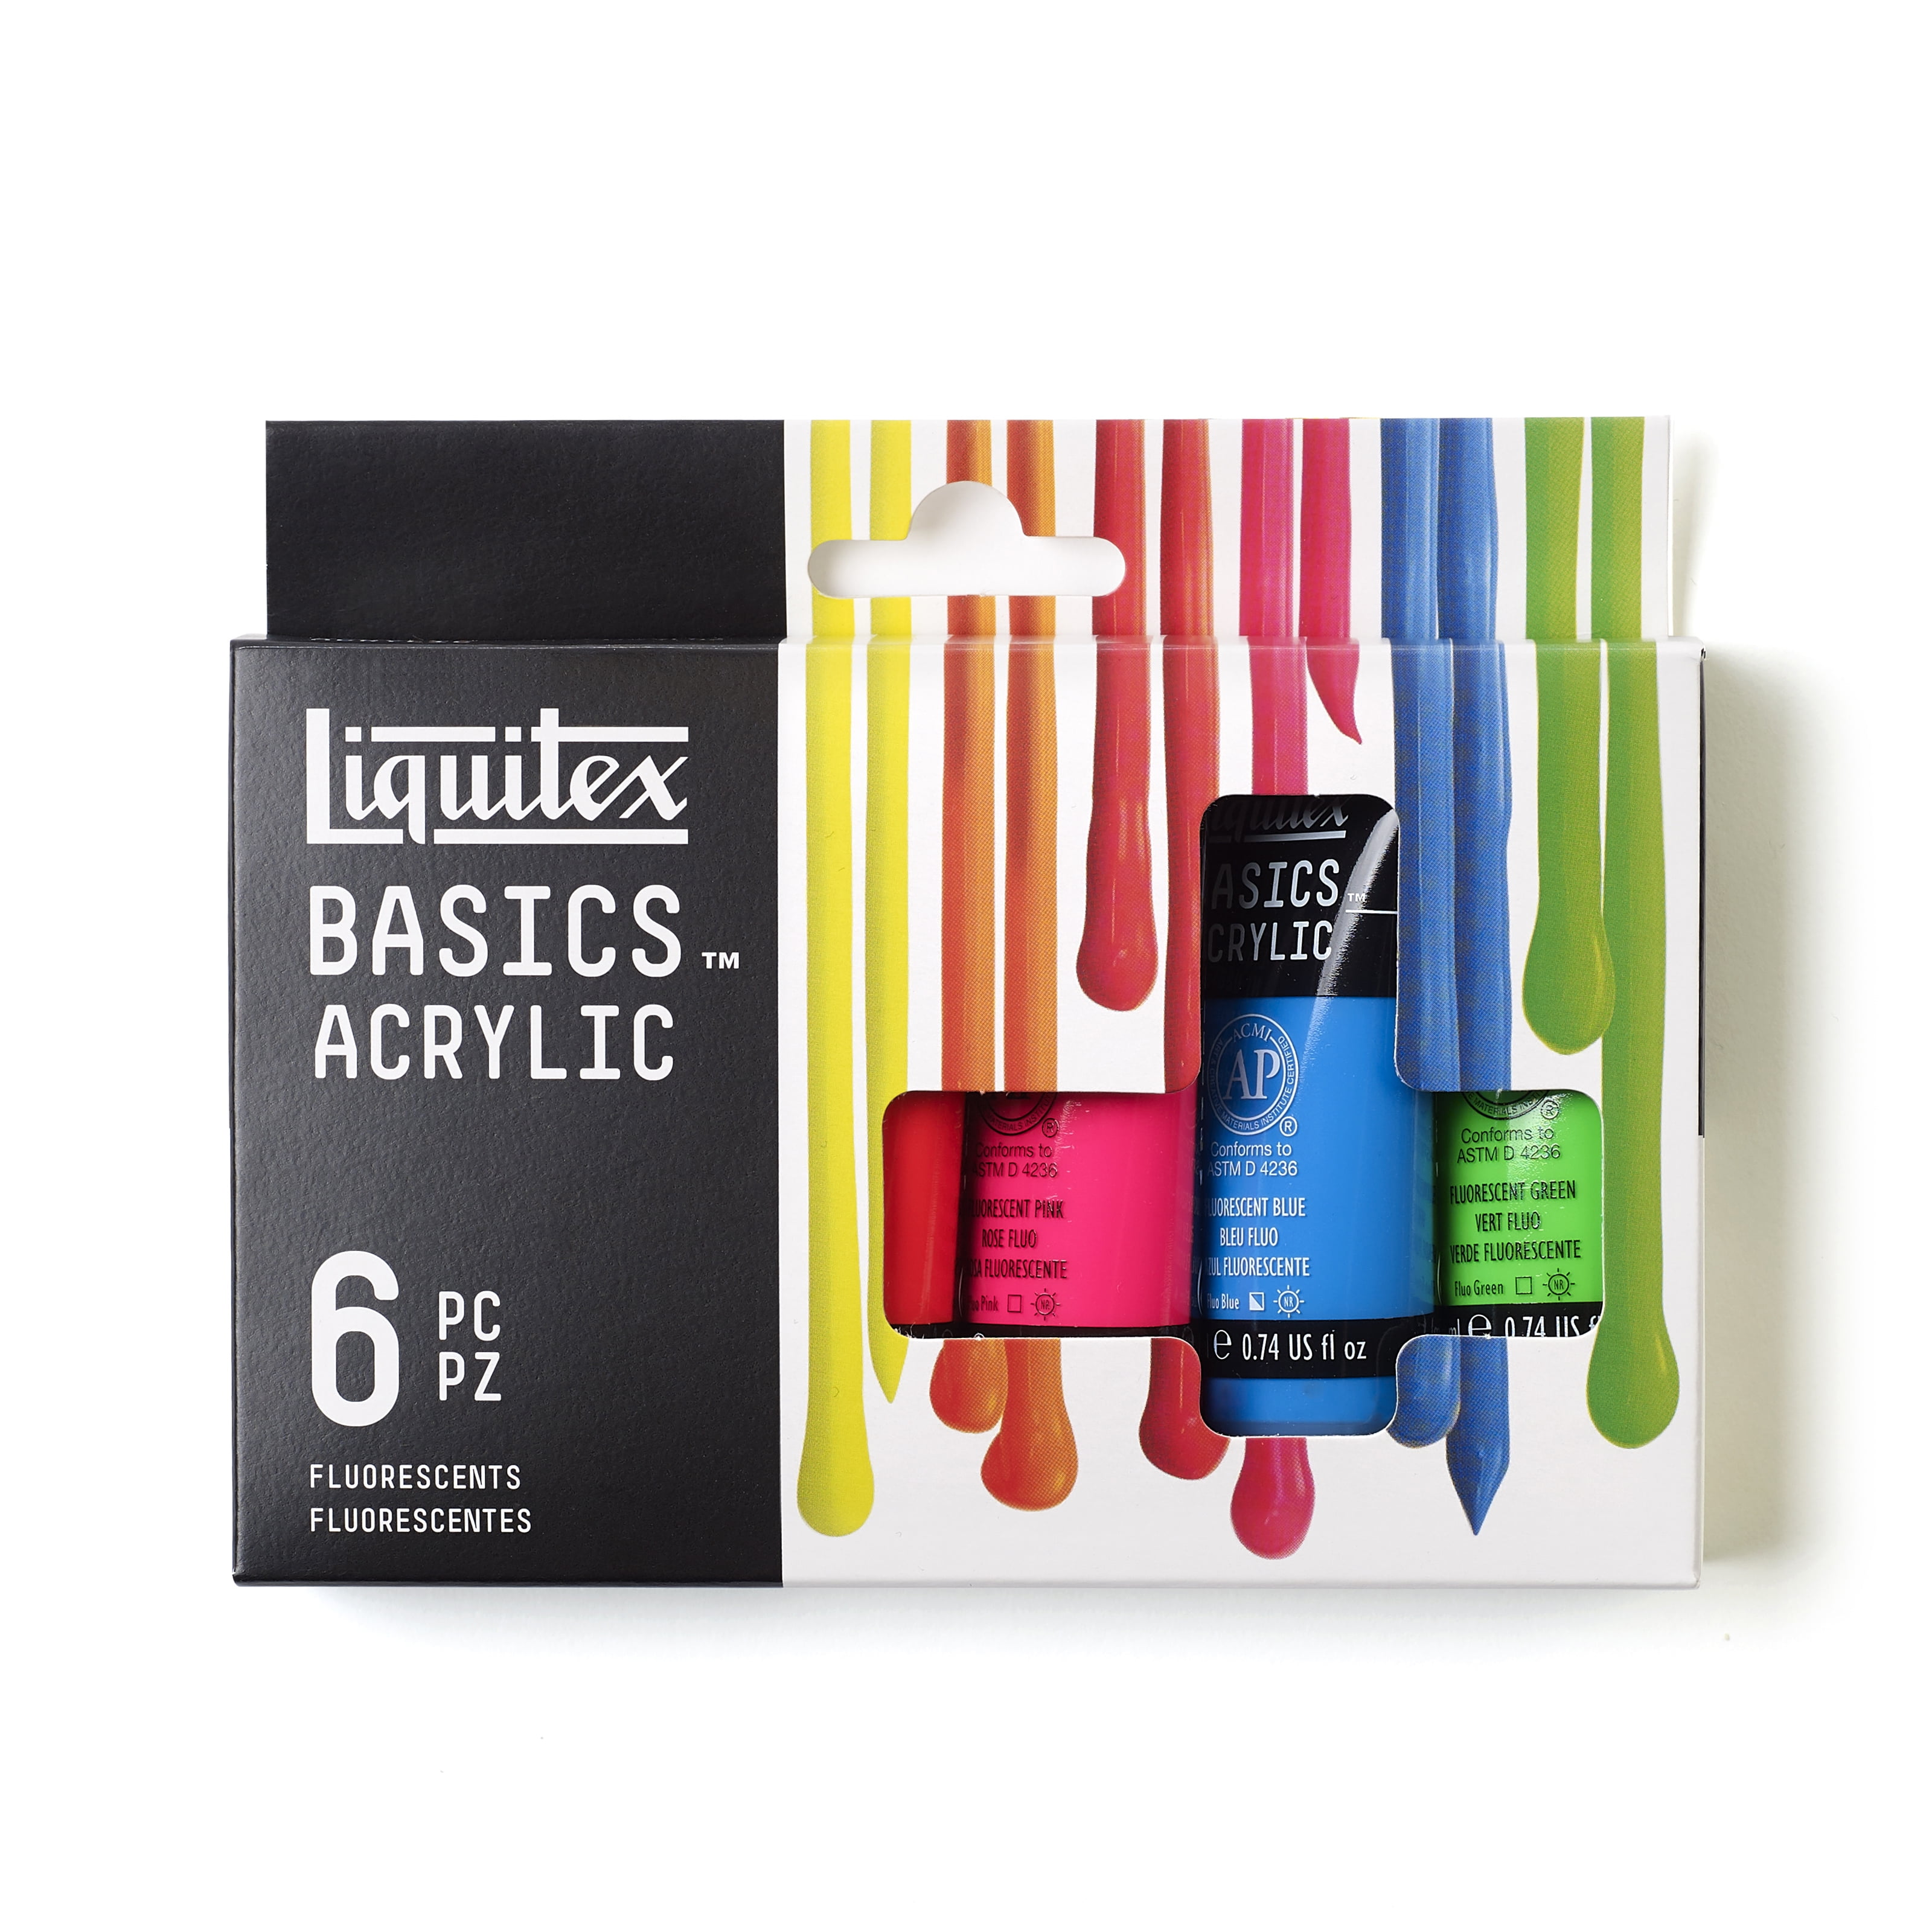 Liquitex BASICS Acrylic 5 Color Set